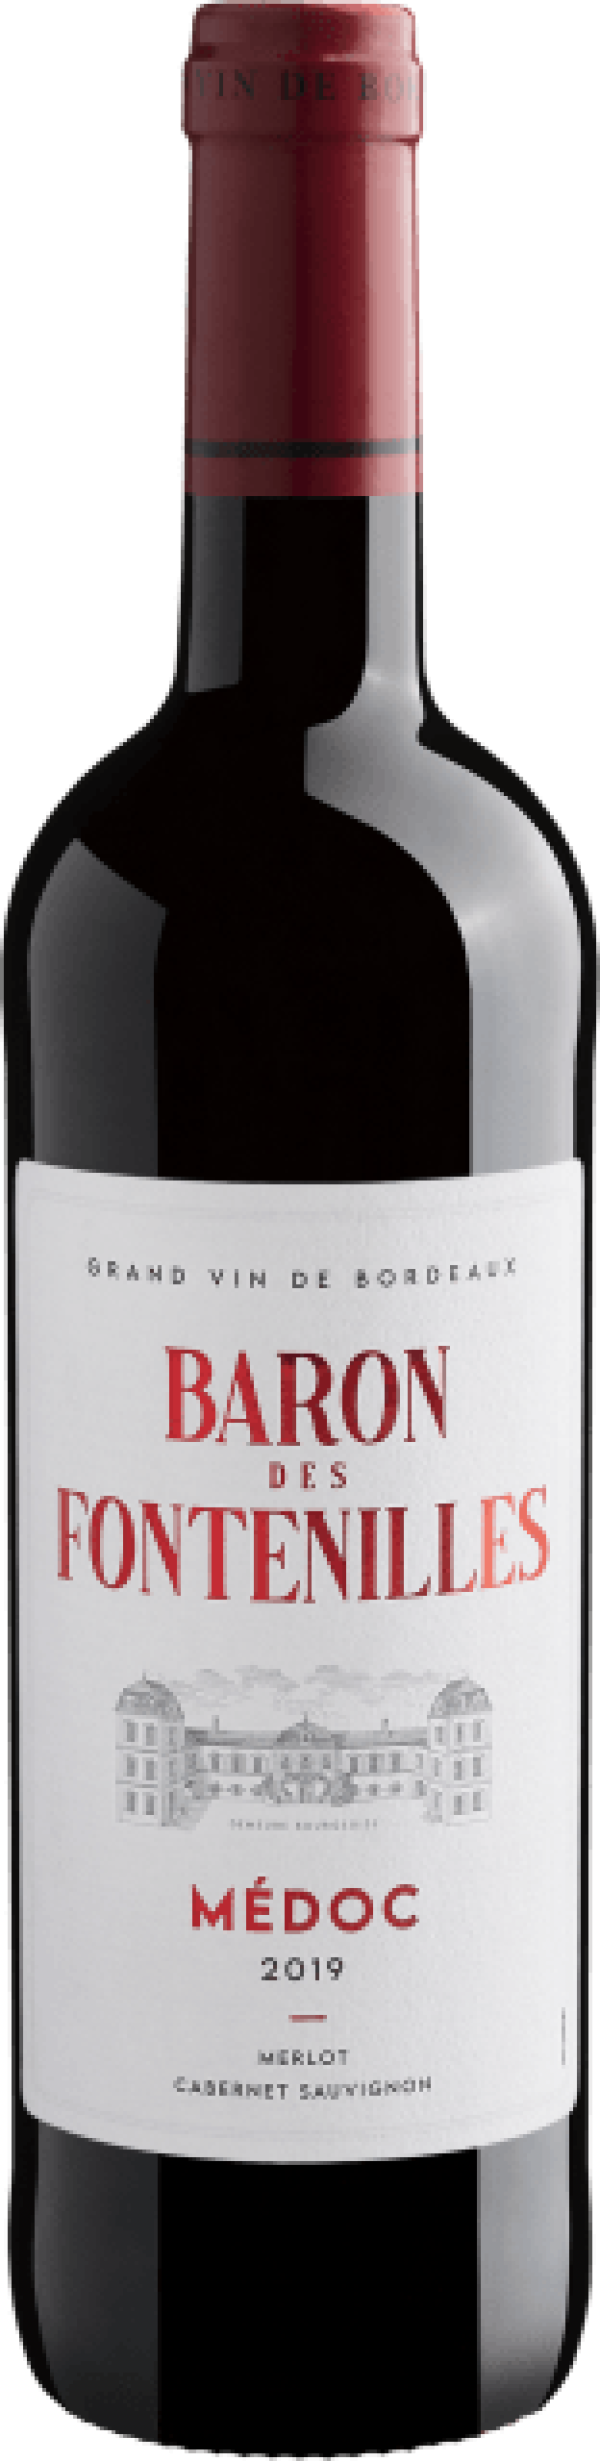 Baron Des Fontenilles Medoc 2019